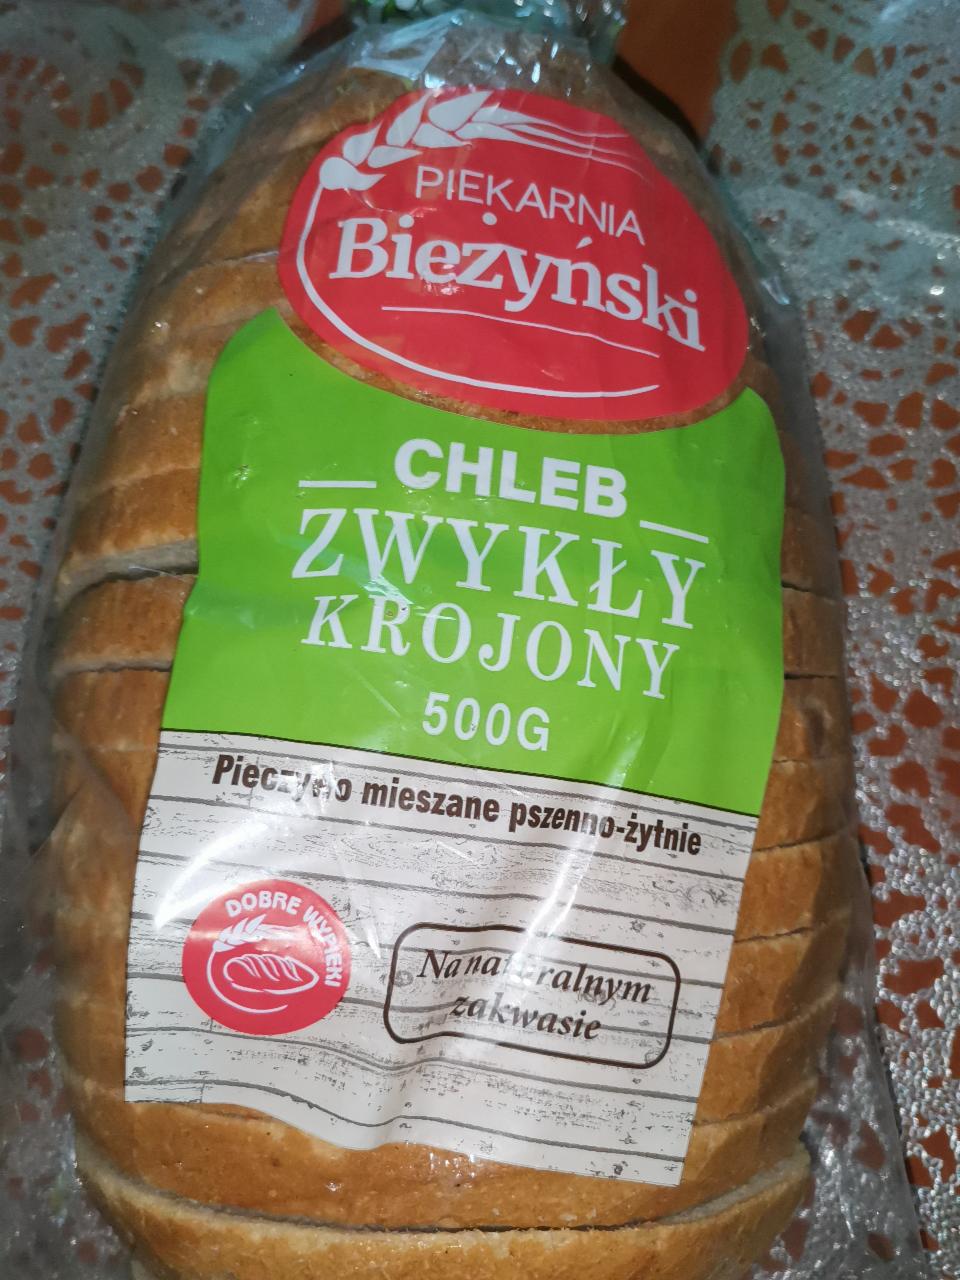 Zdjęcia - chleb zwykły krojony piekarnia bieżyński 